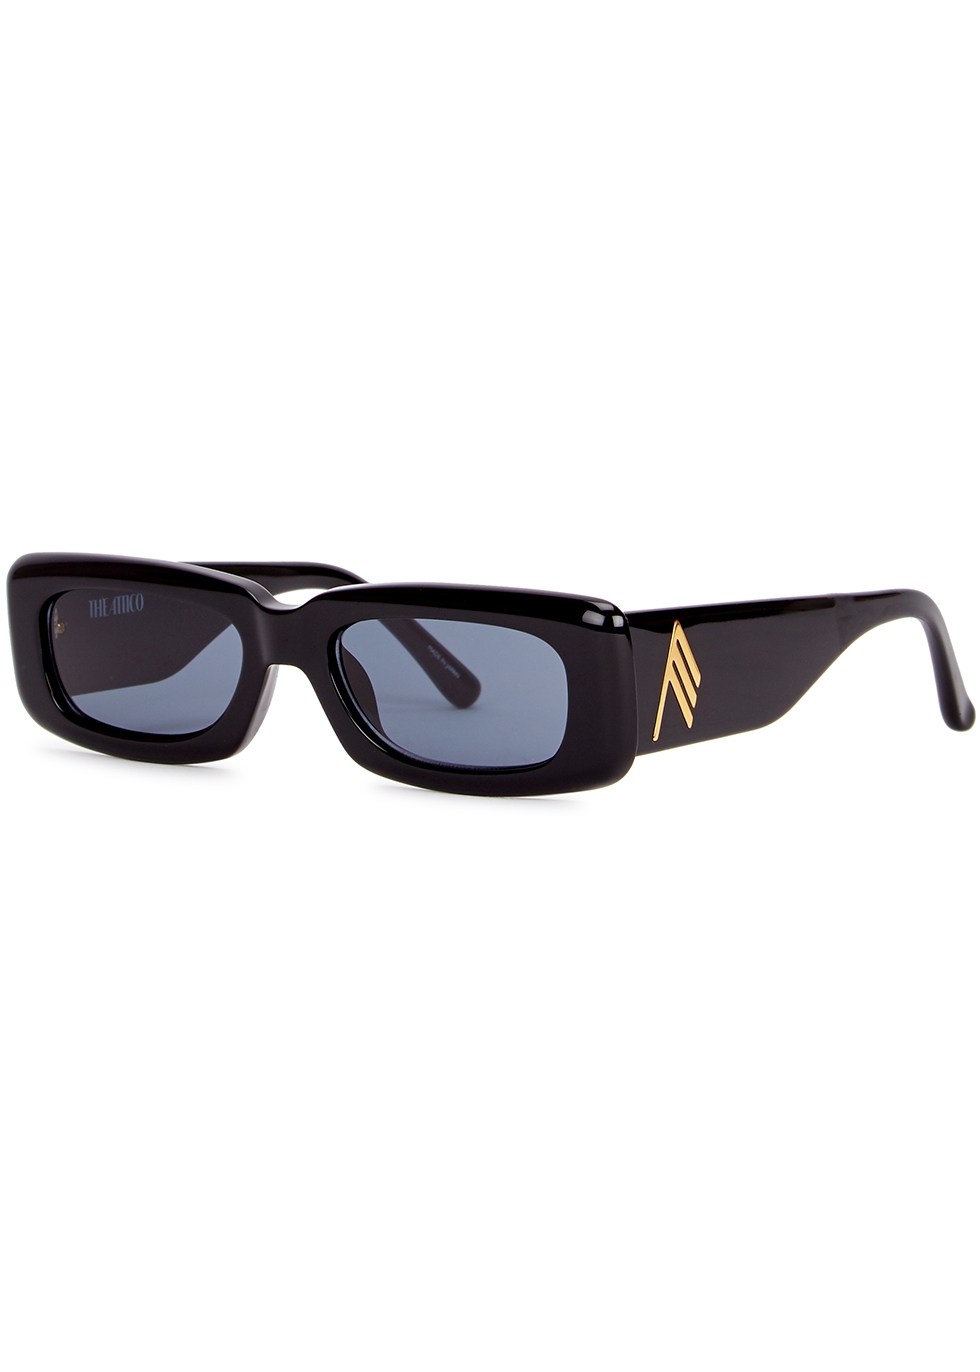 New Locs Classic Rectangle Black Men's Designer Sunglasses 